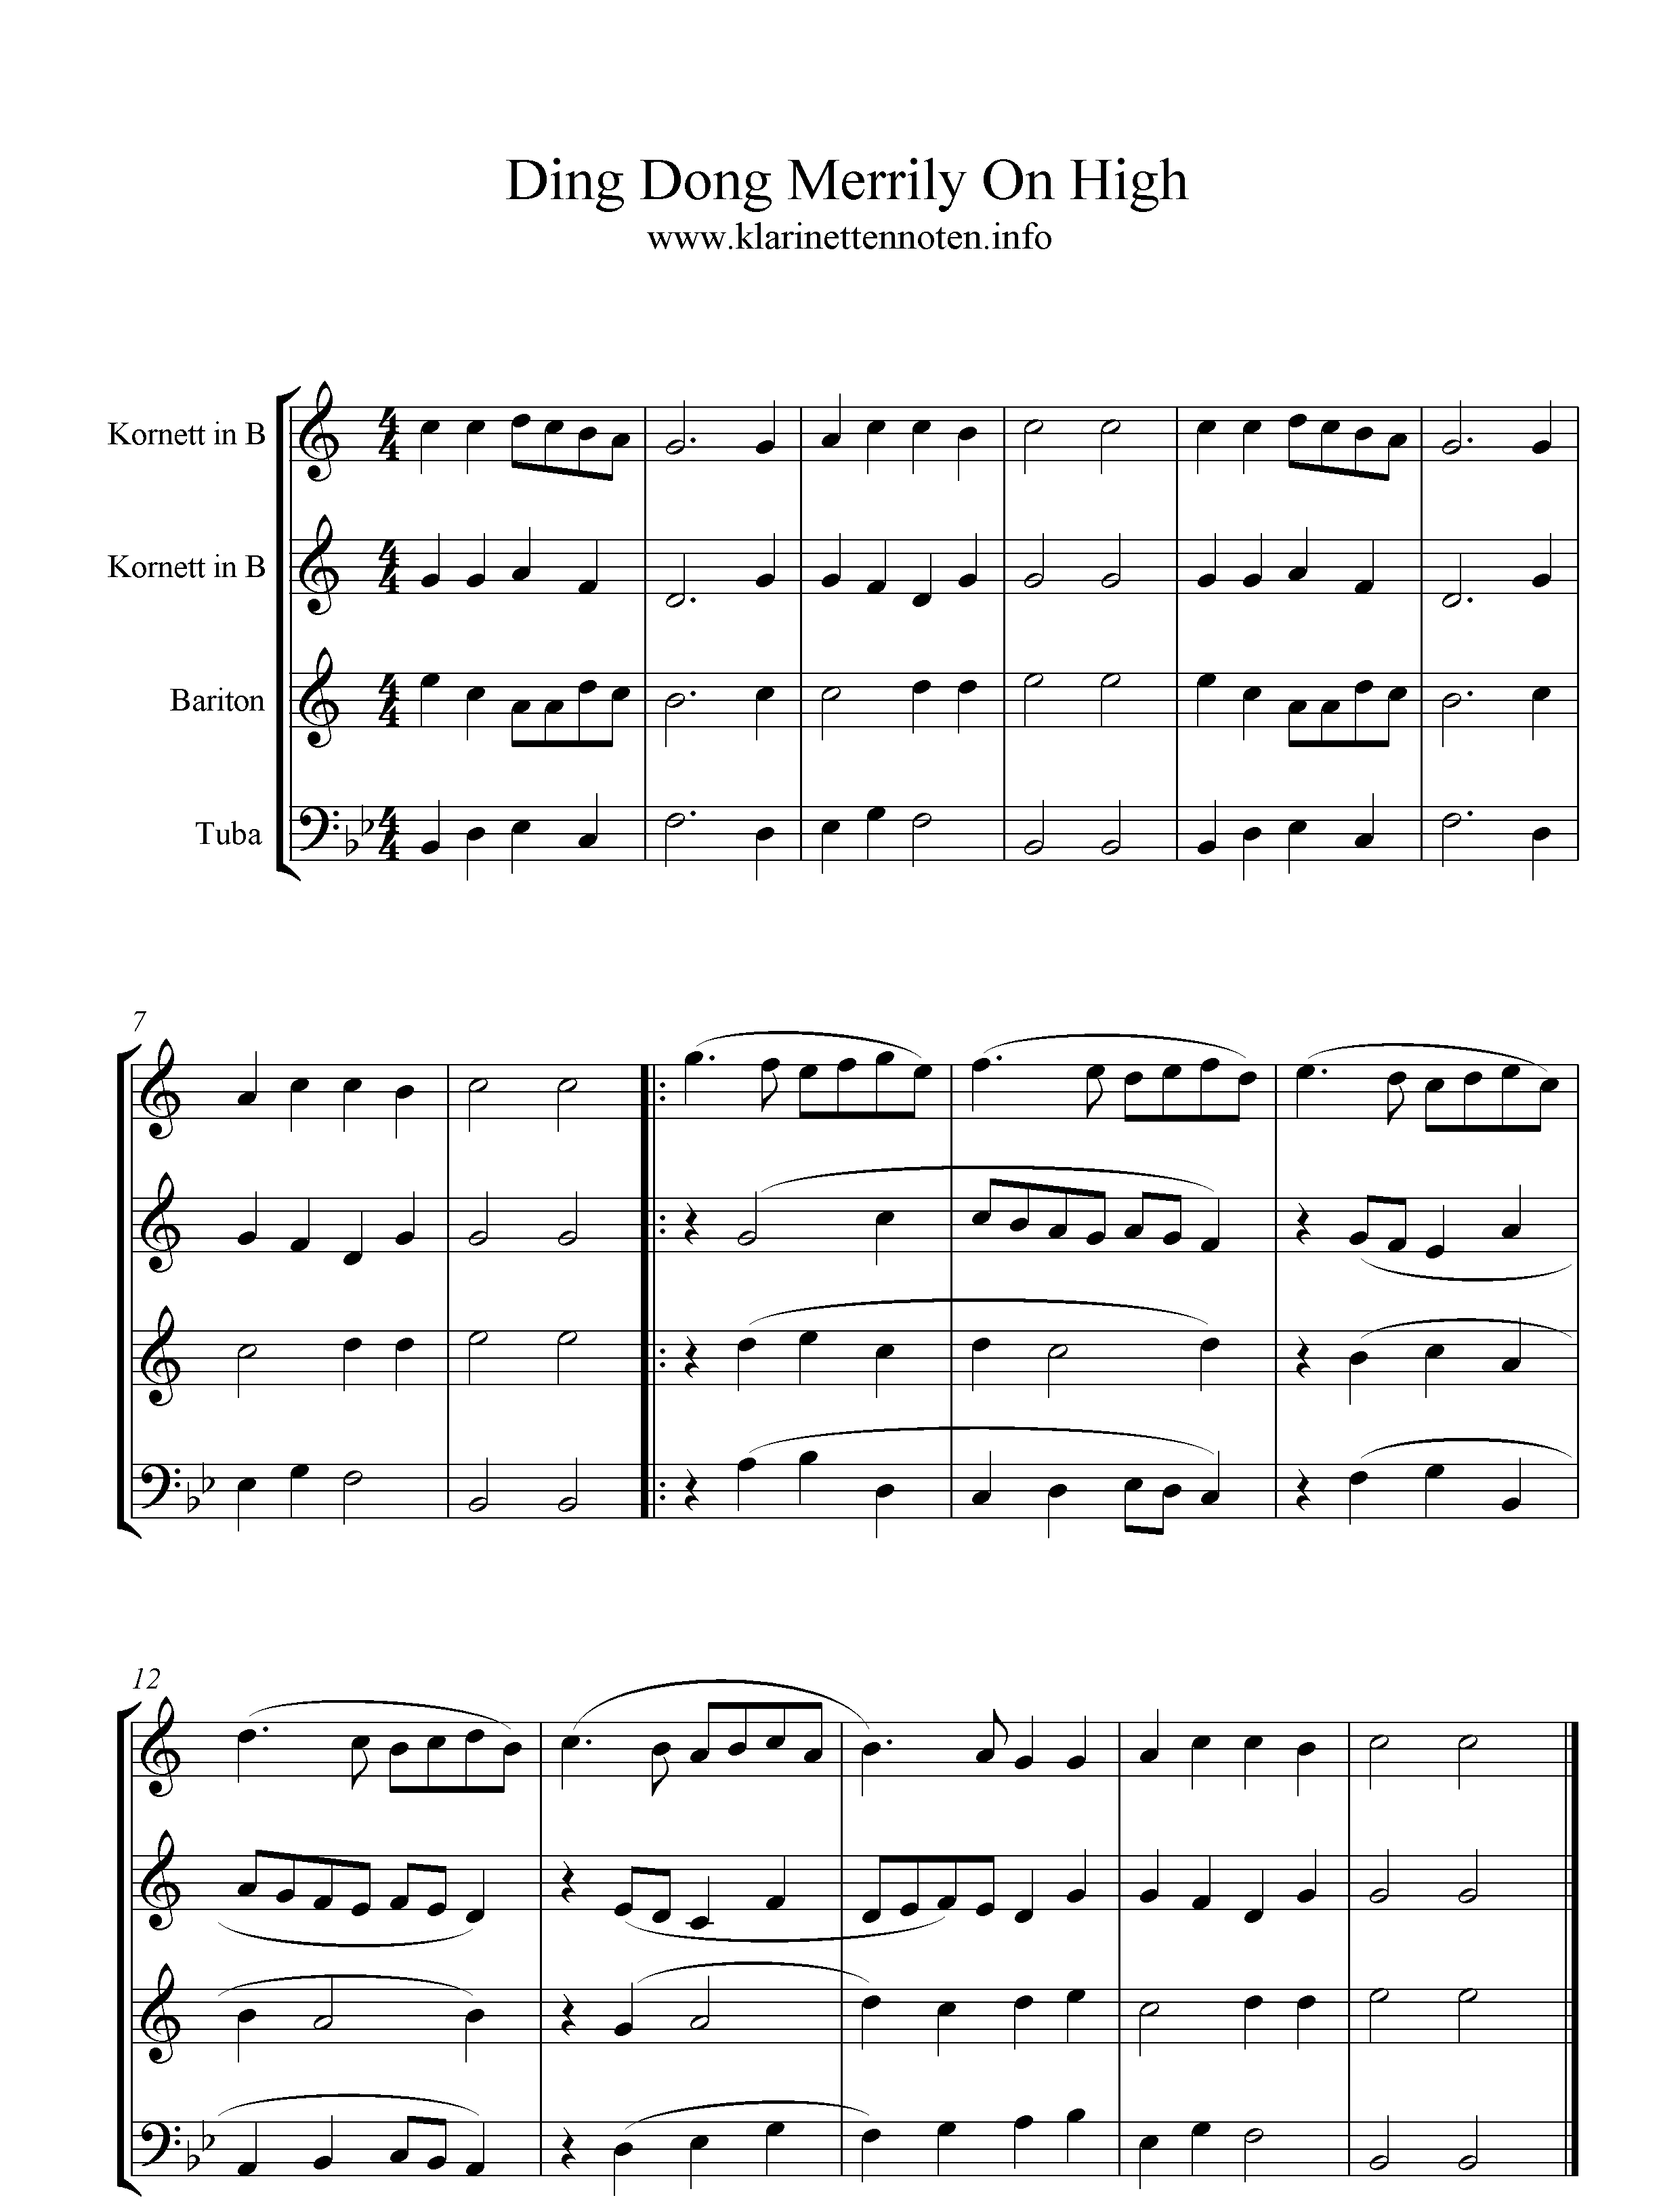 Noten, Blechbläser Quartet, C-Dur, Ding Dong Merrliy On High